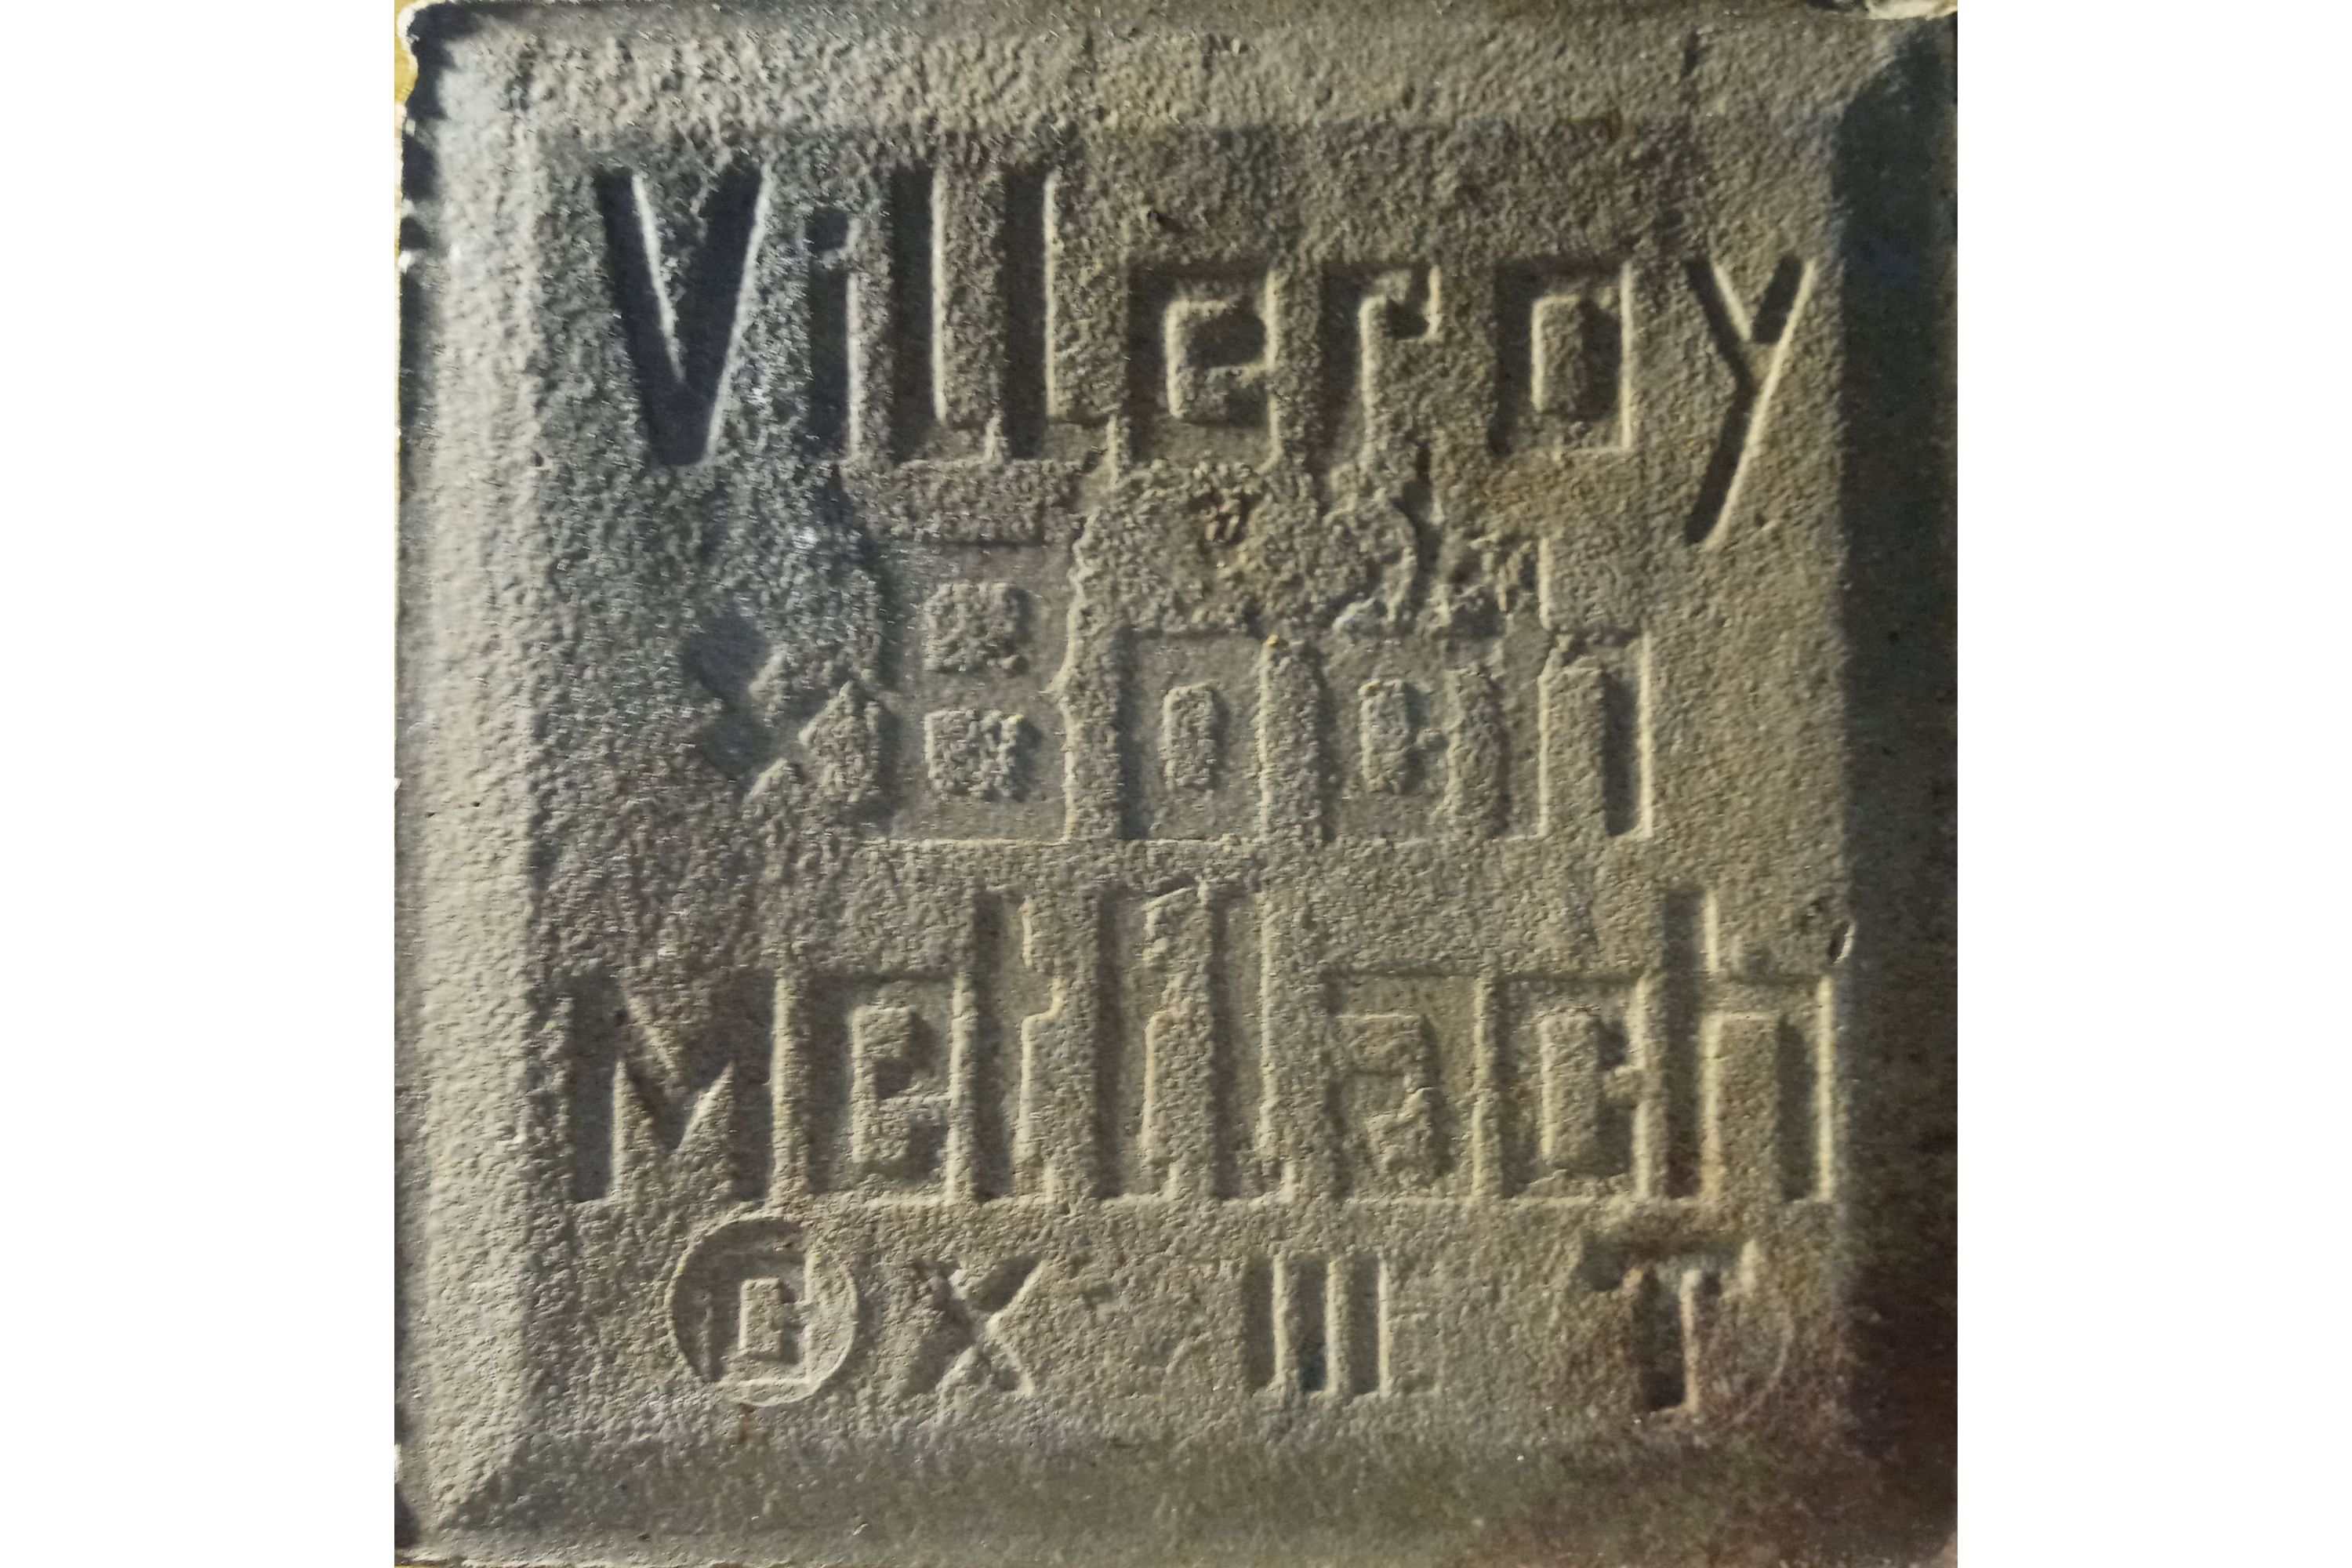 H.S.N. Evento. Reverso de baldosa histórica con relieve que inscribe el nombre de la compañía Villeroy & Boch y la ciudad alemana Mettlach, donde está situada la fábrica.